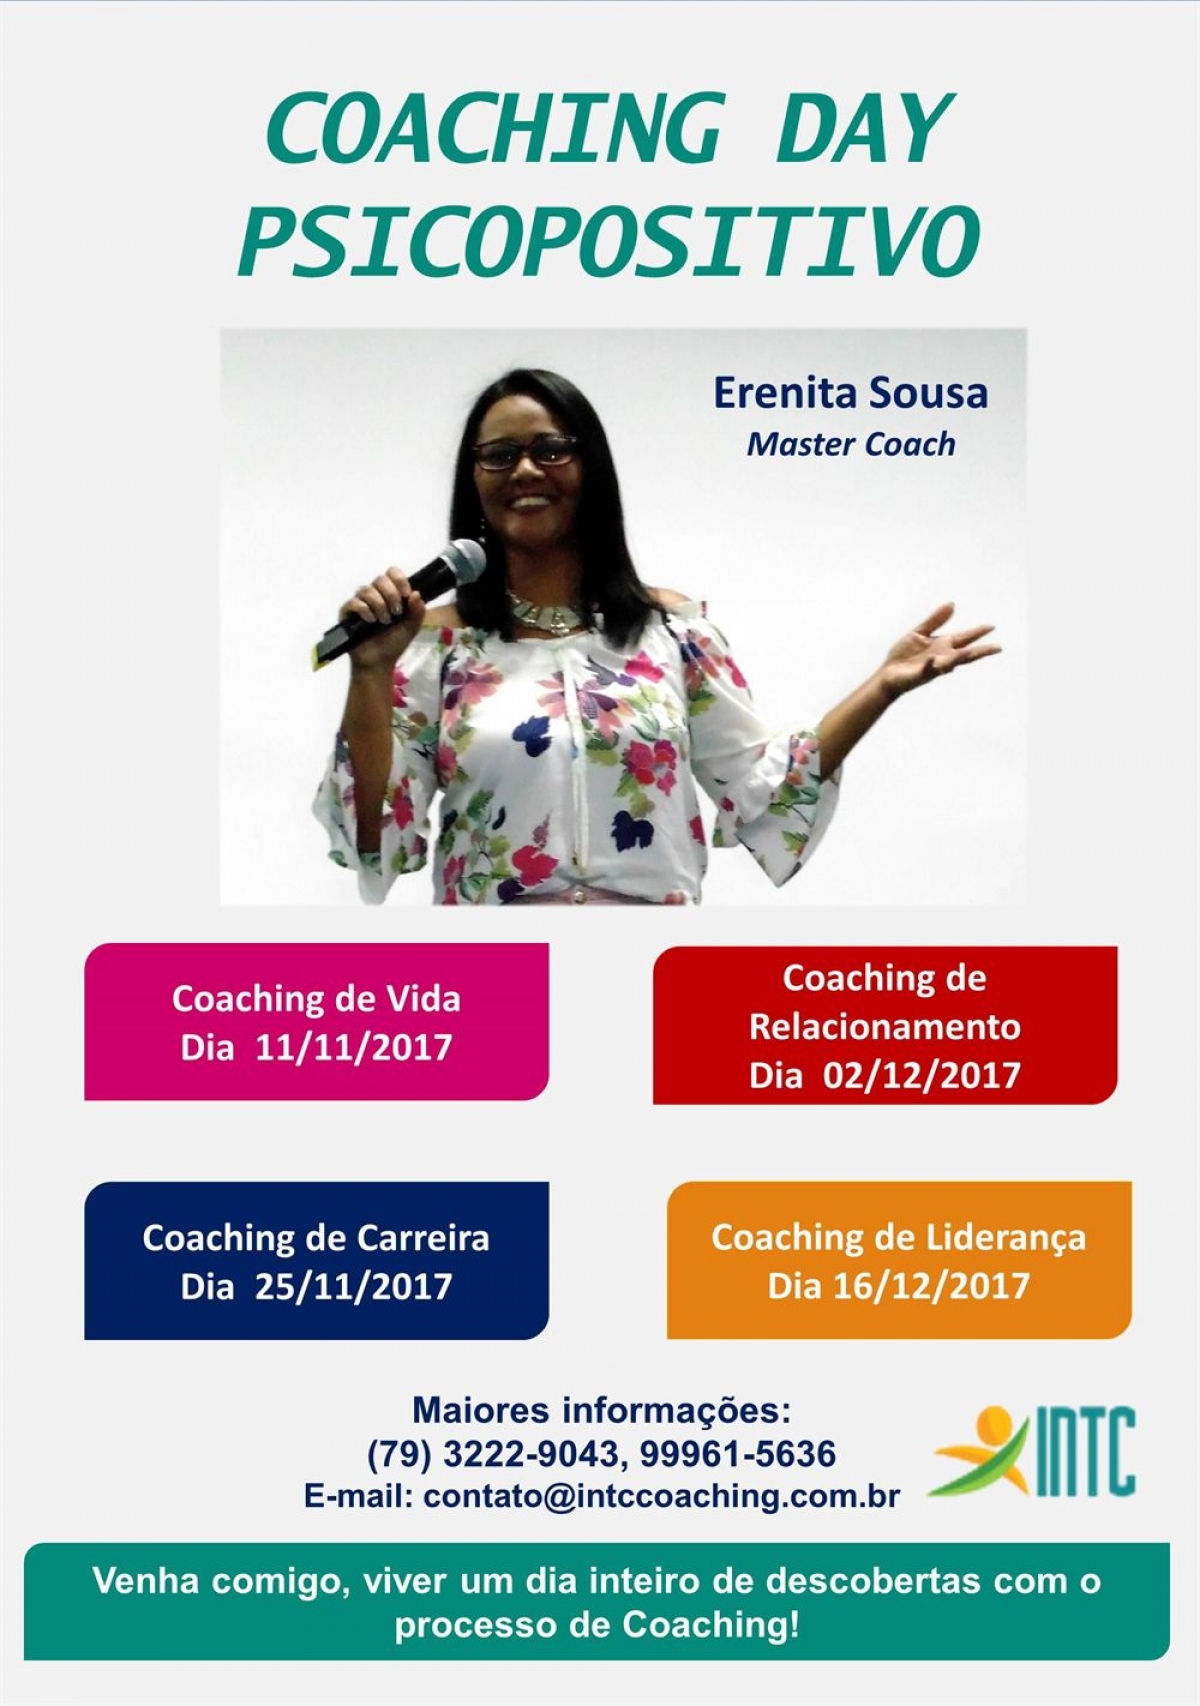 Coaching Day Psicopositivo (Imagem: Divulgação)